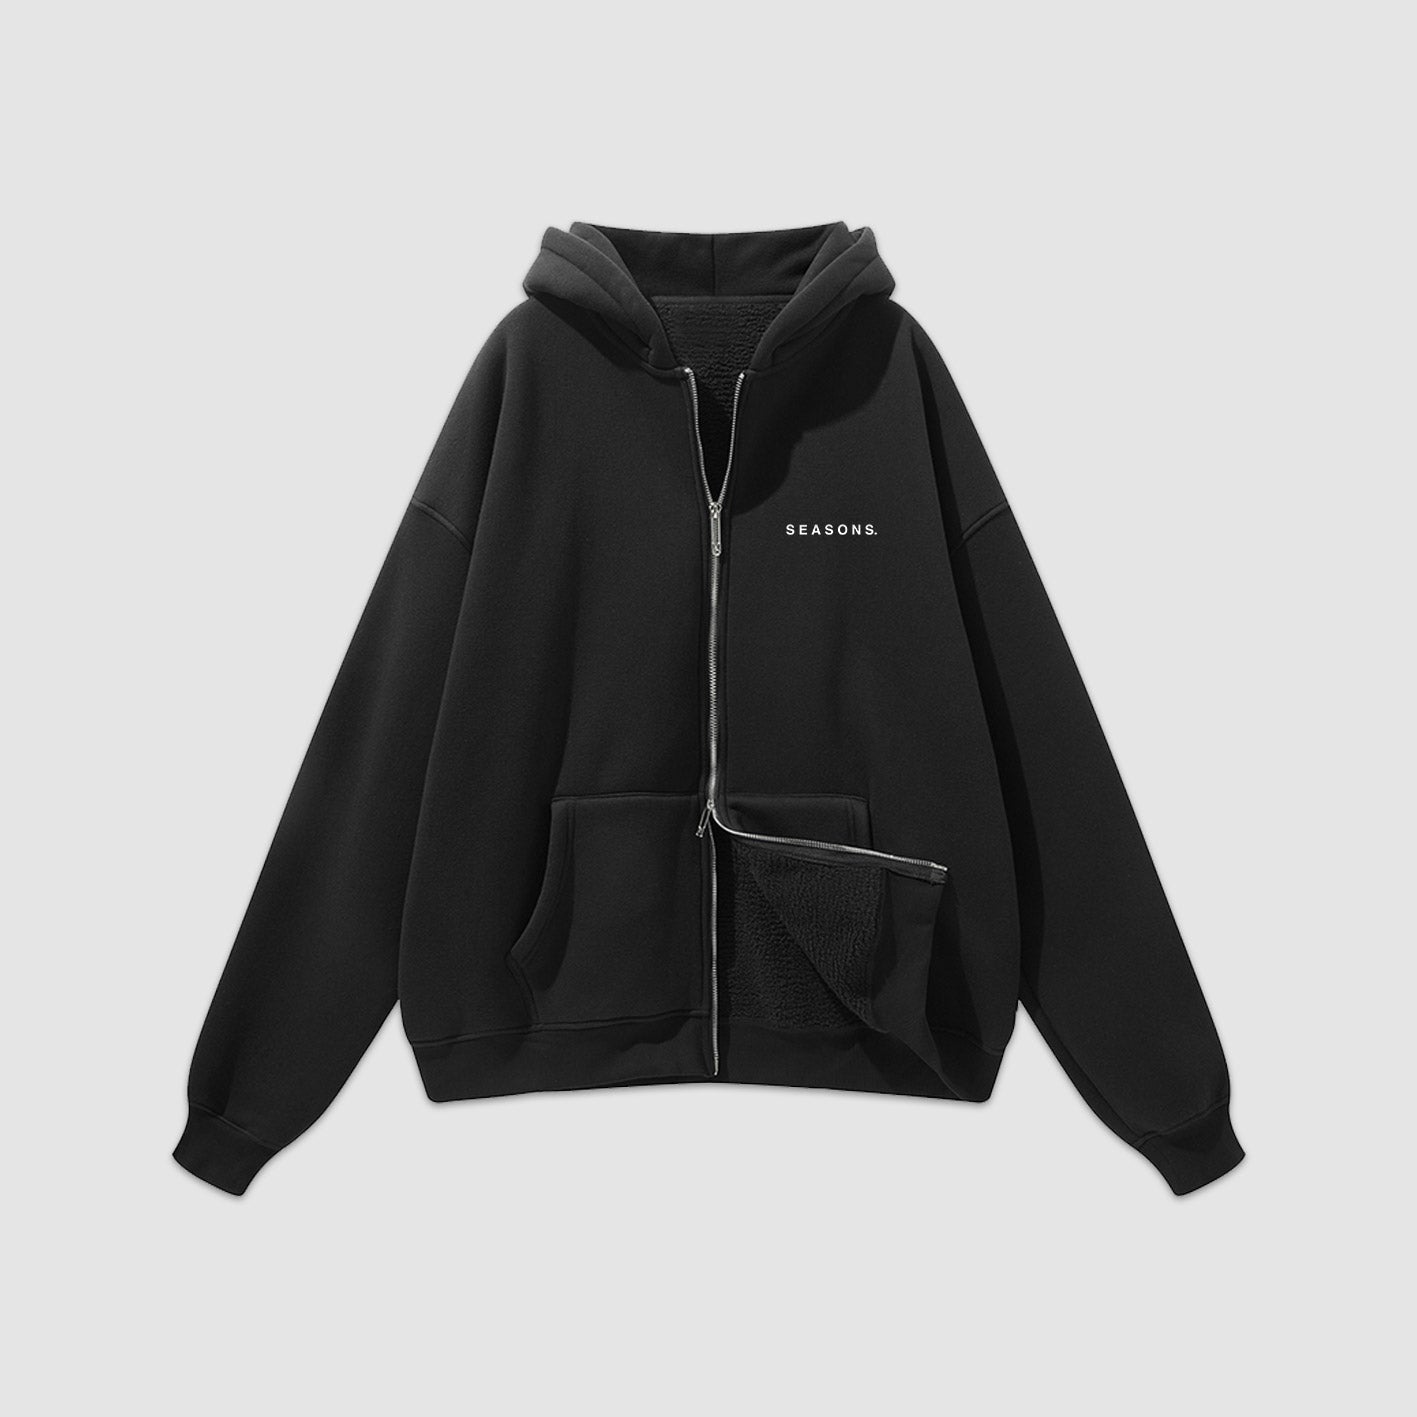 Avery Hoodie - XSM / Black  Hoodies for sale, Hoodies, Wool hoodie